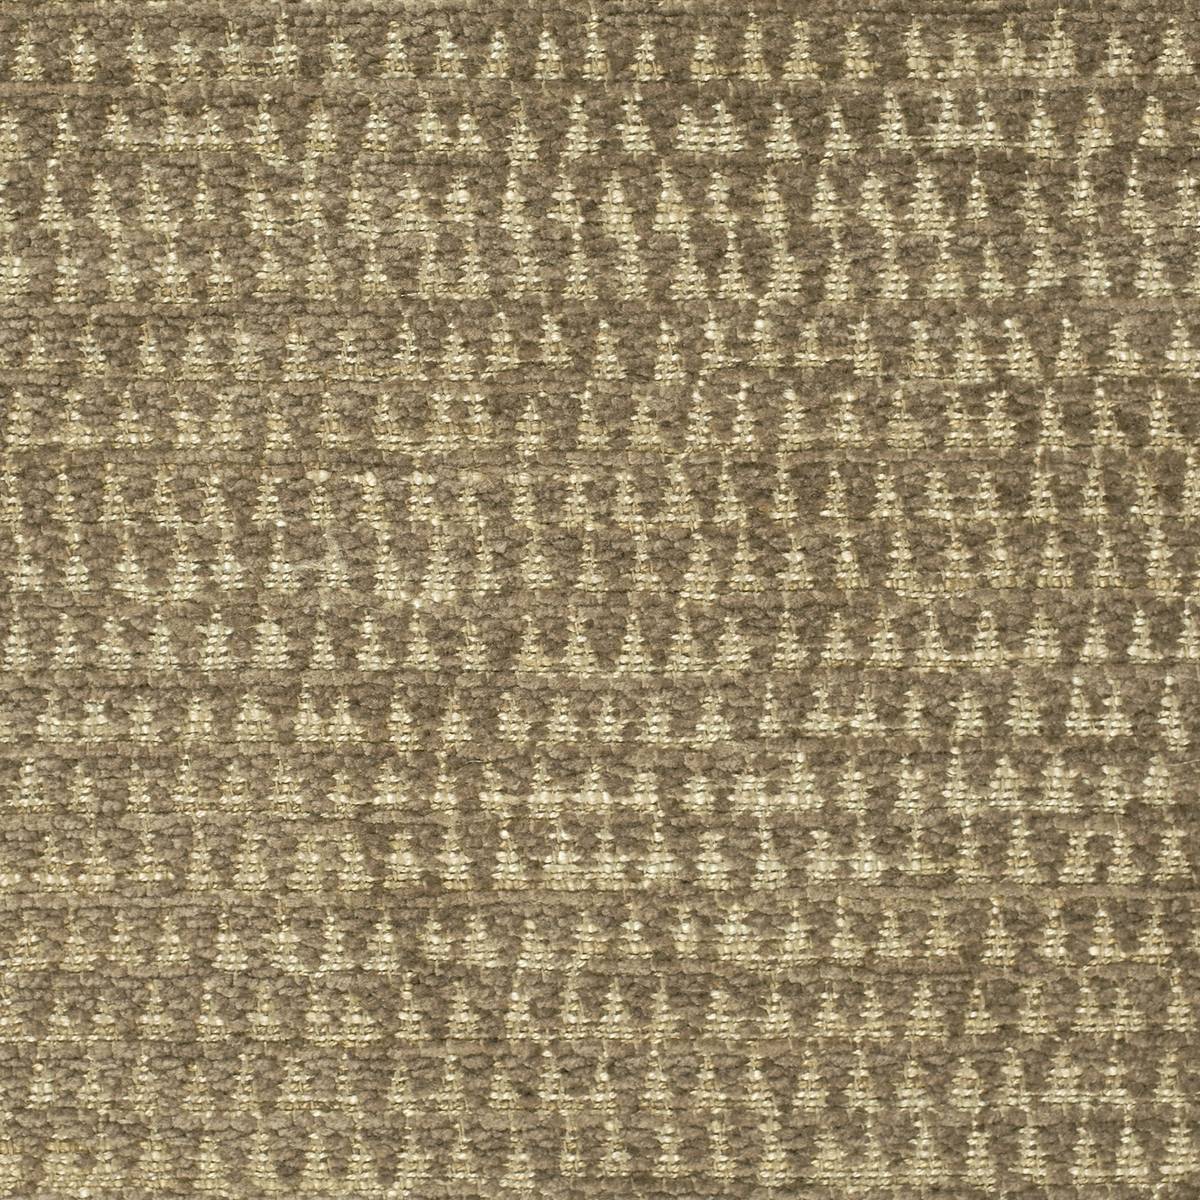 Merrington Caramel Fabric by Zoffany